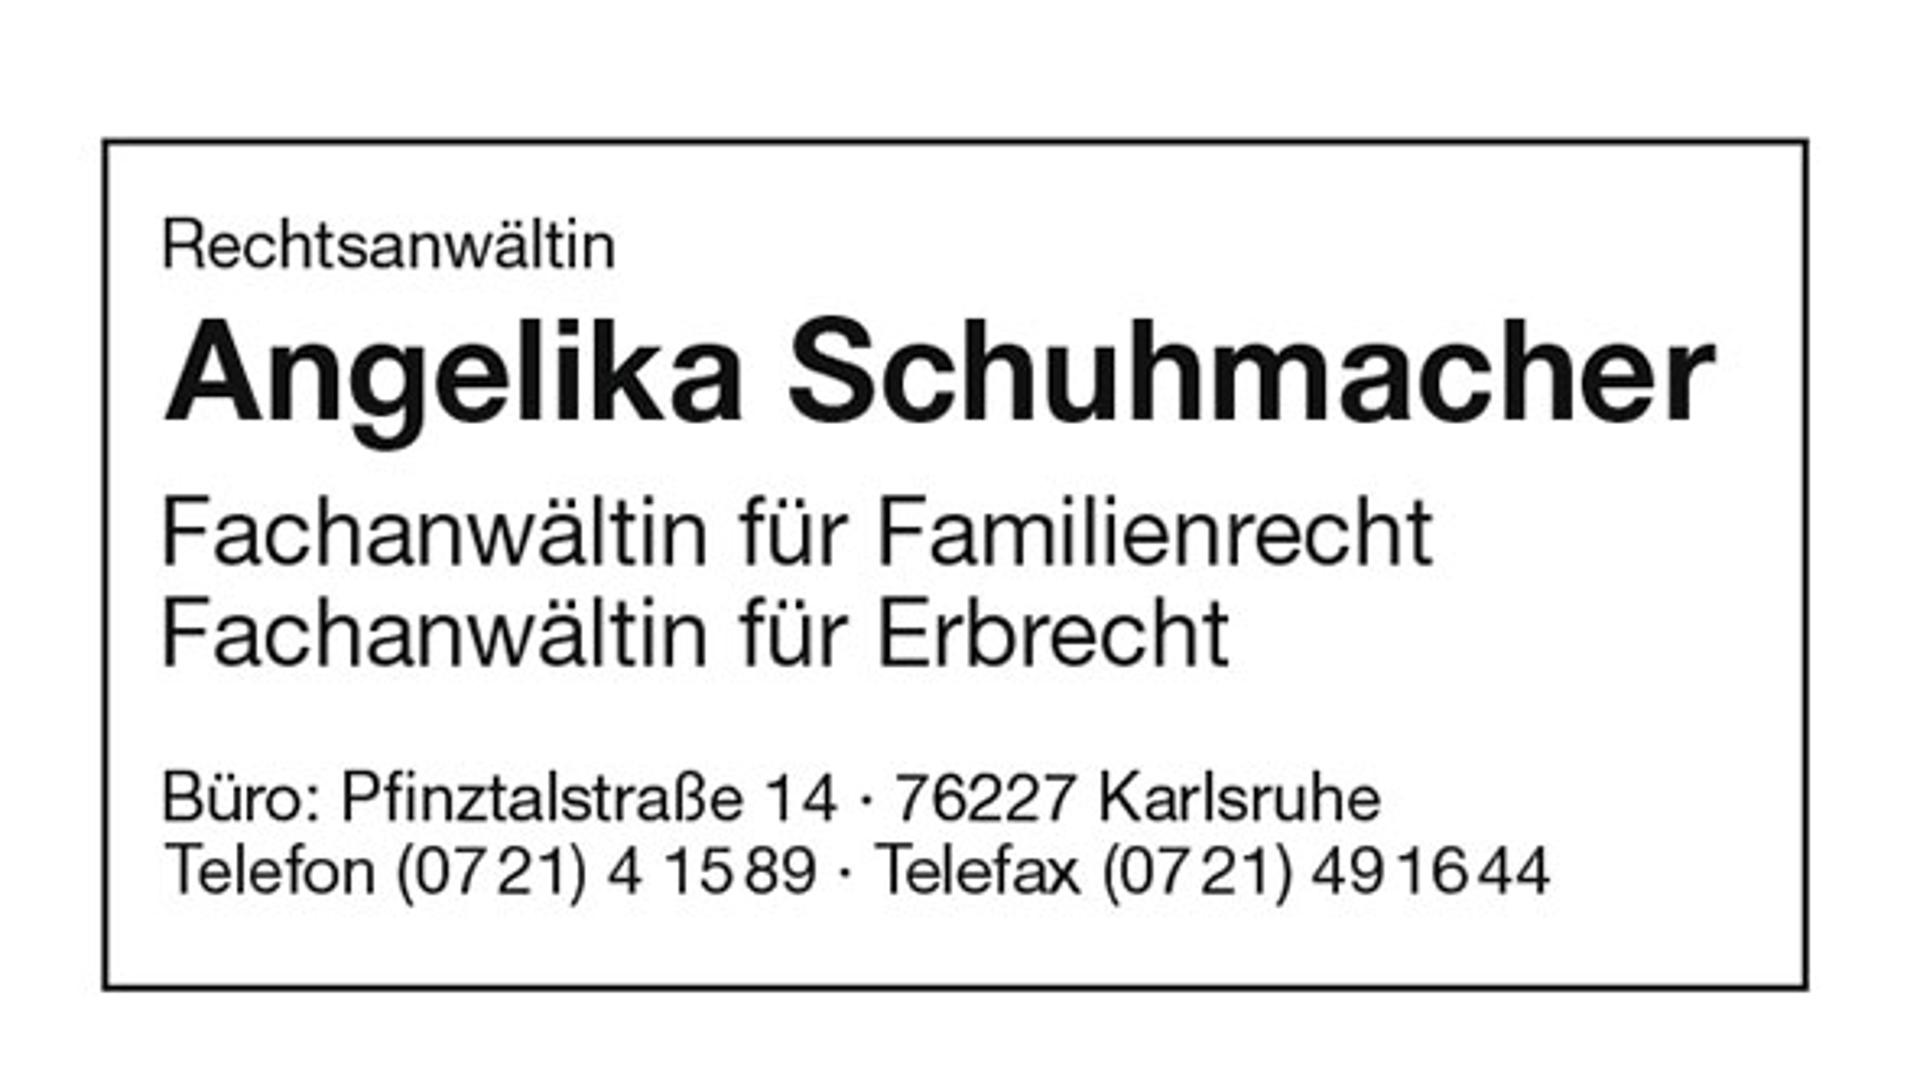 Schuhmacher Angelika - Familienrecht und Erbrecht